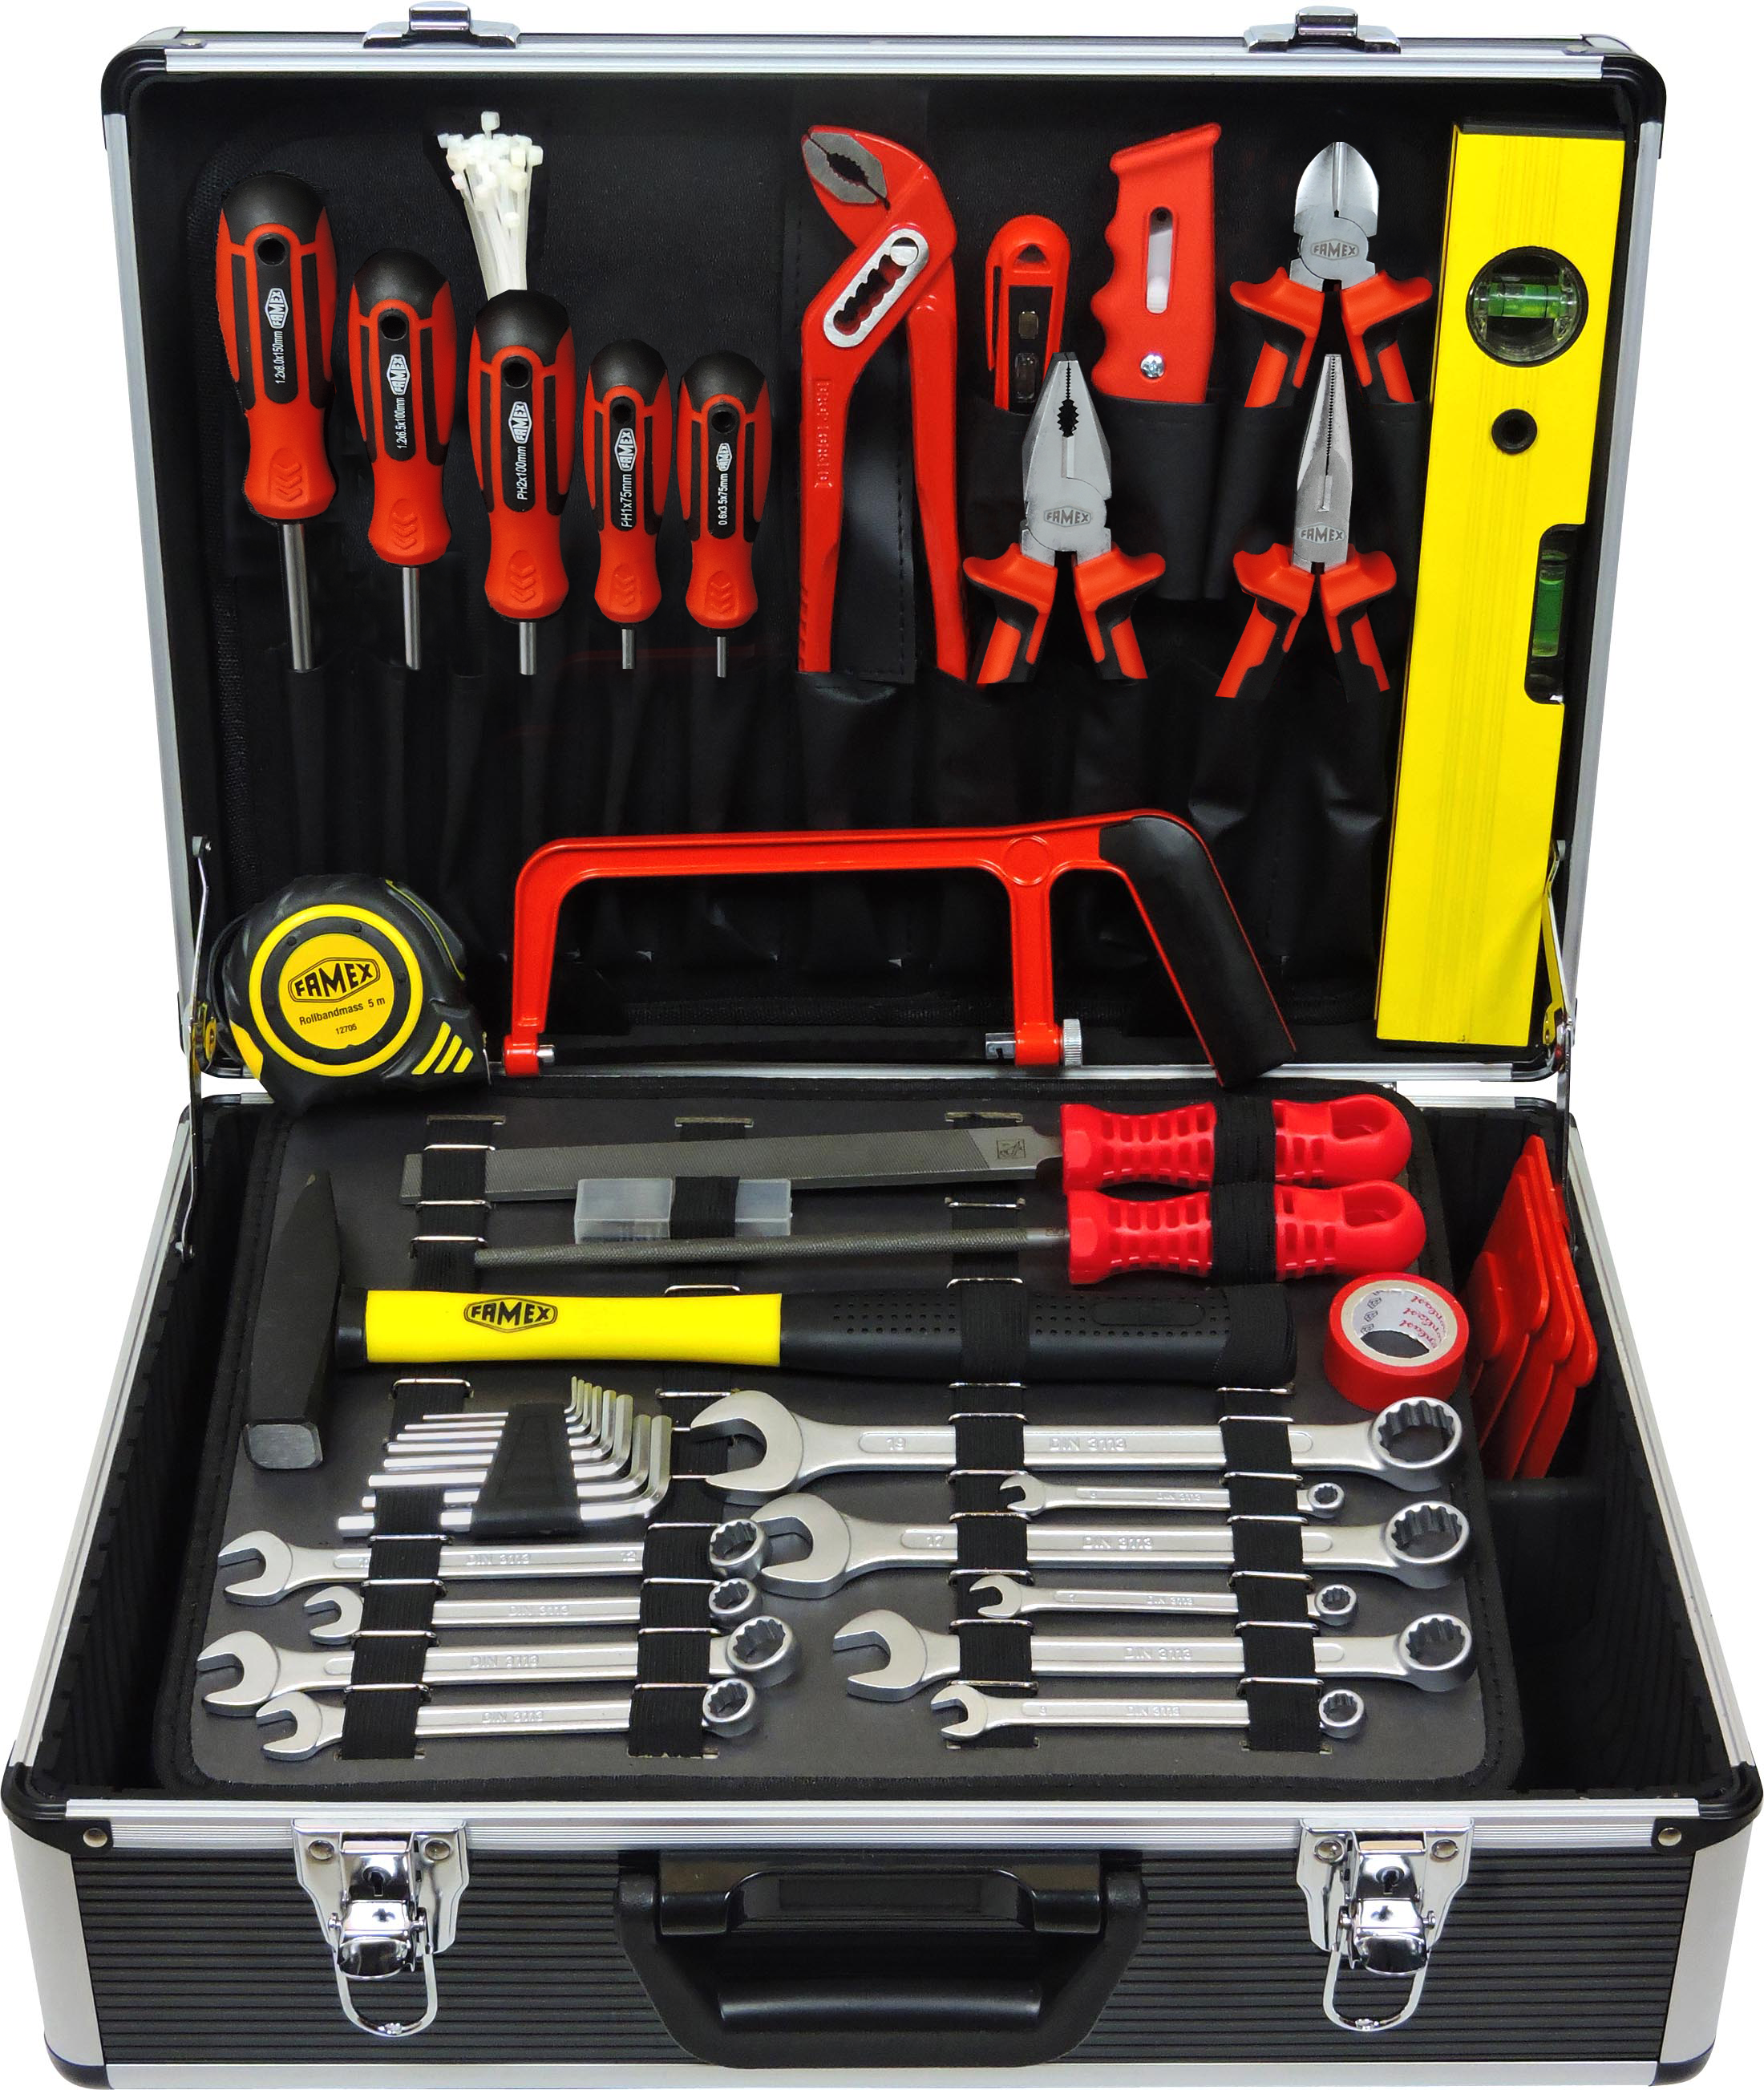 Kit online Set 744-48 Universal FAMEX kaufen - Tool with günstig Werkzeuge Socket